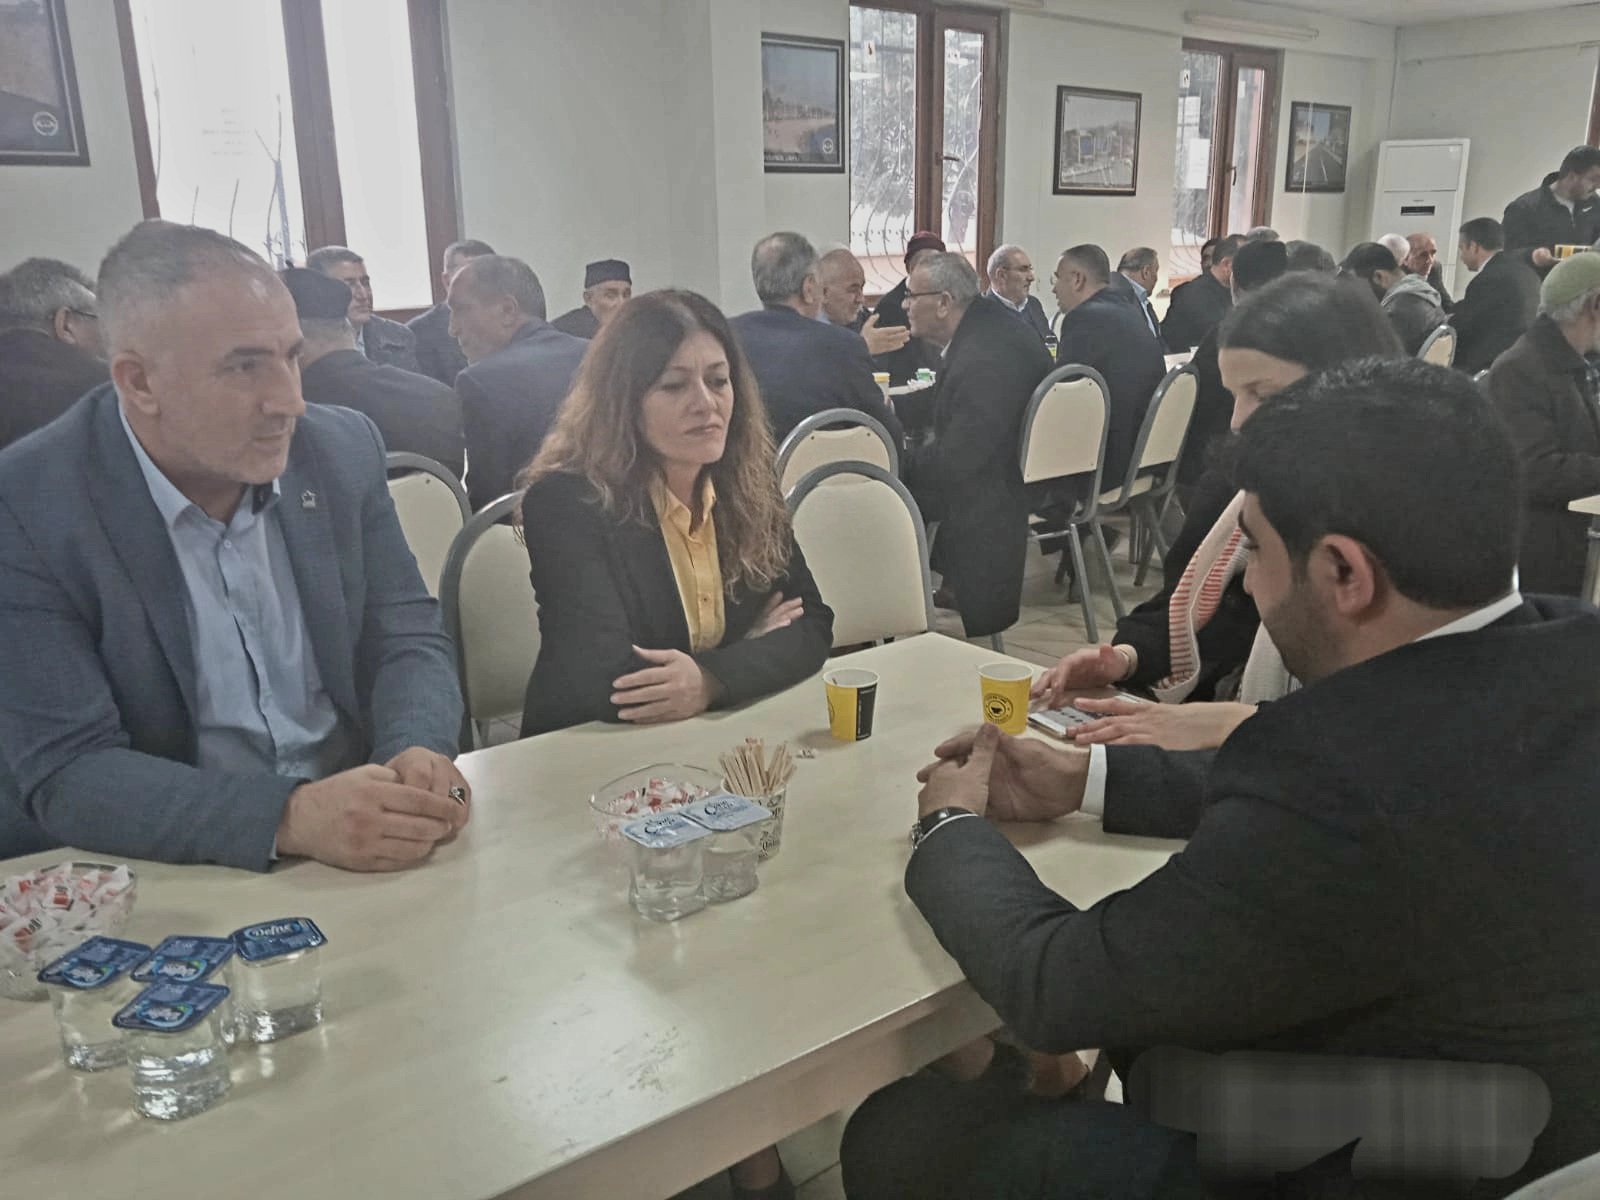 Dilovası Kurucu Belediye Başkanı Ercan Dalkılıç'ın ailesine taziye ziyaretinde bulunduk.